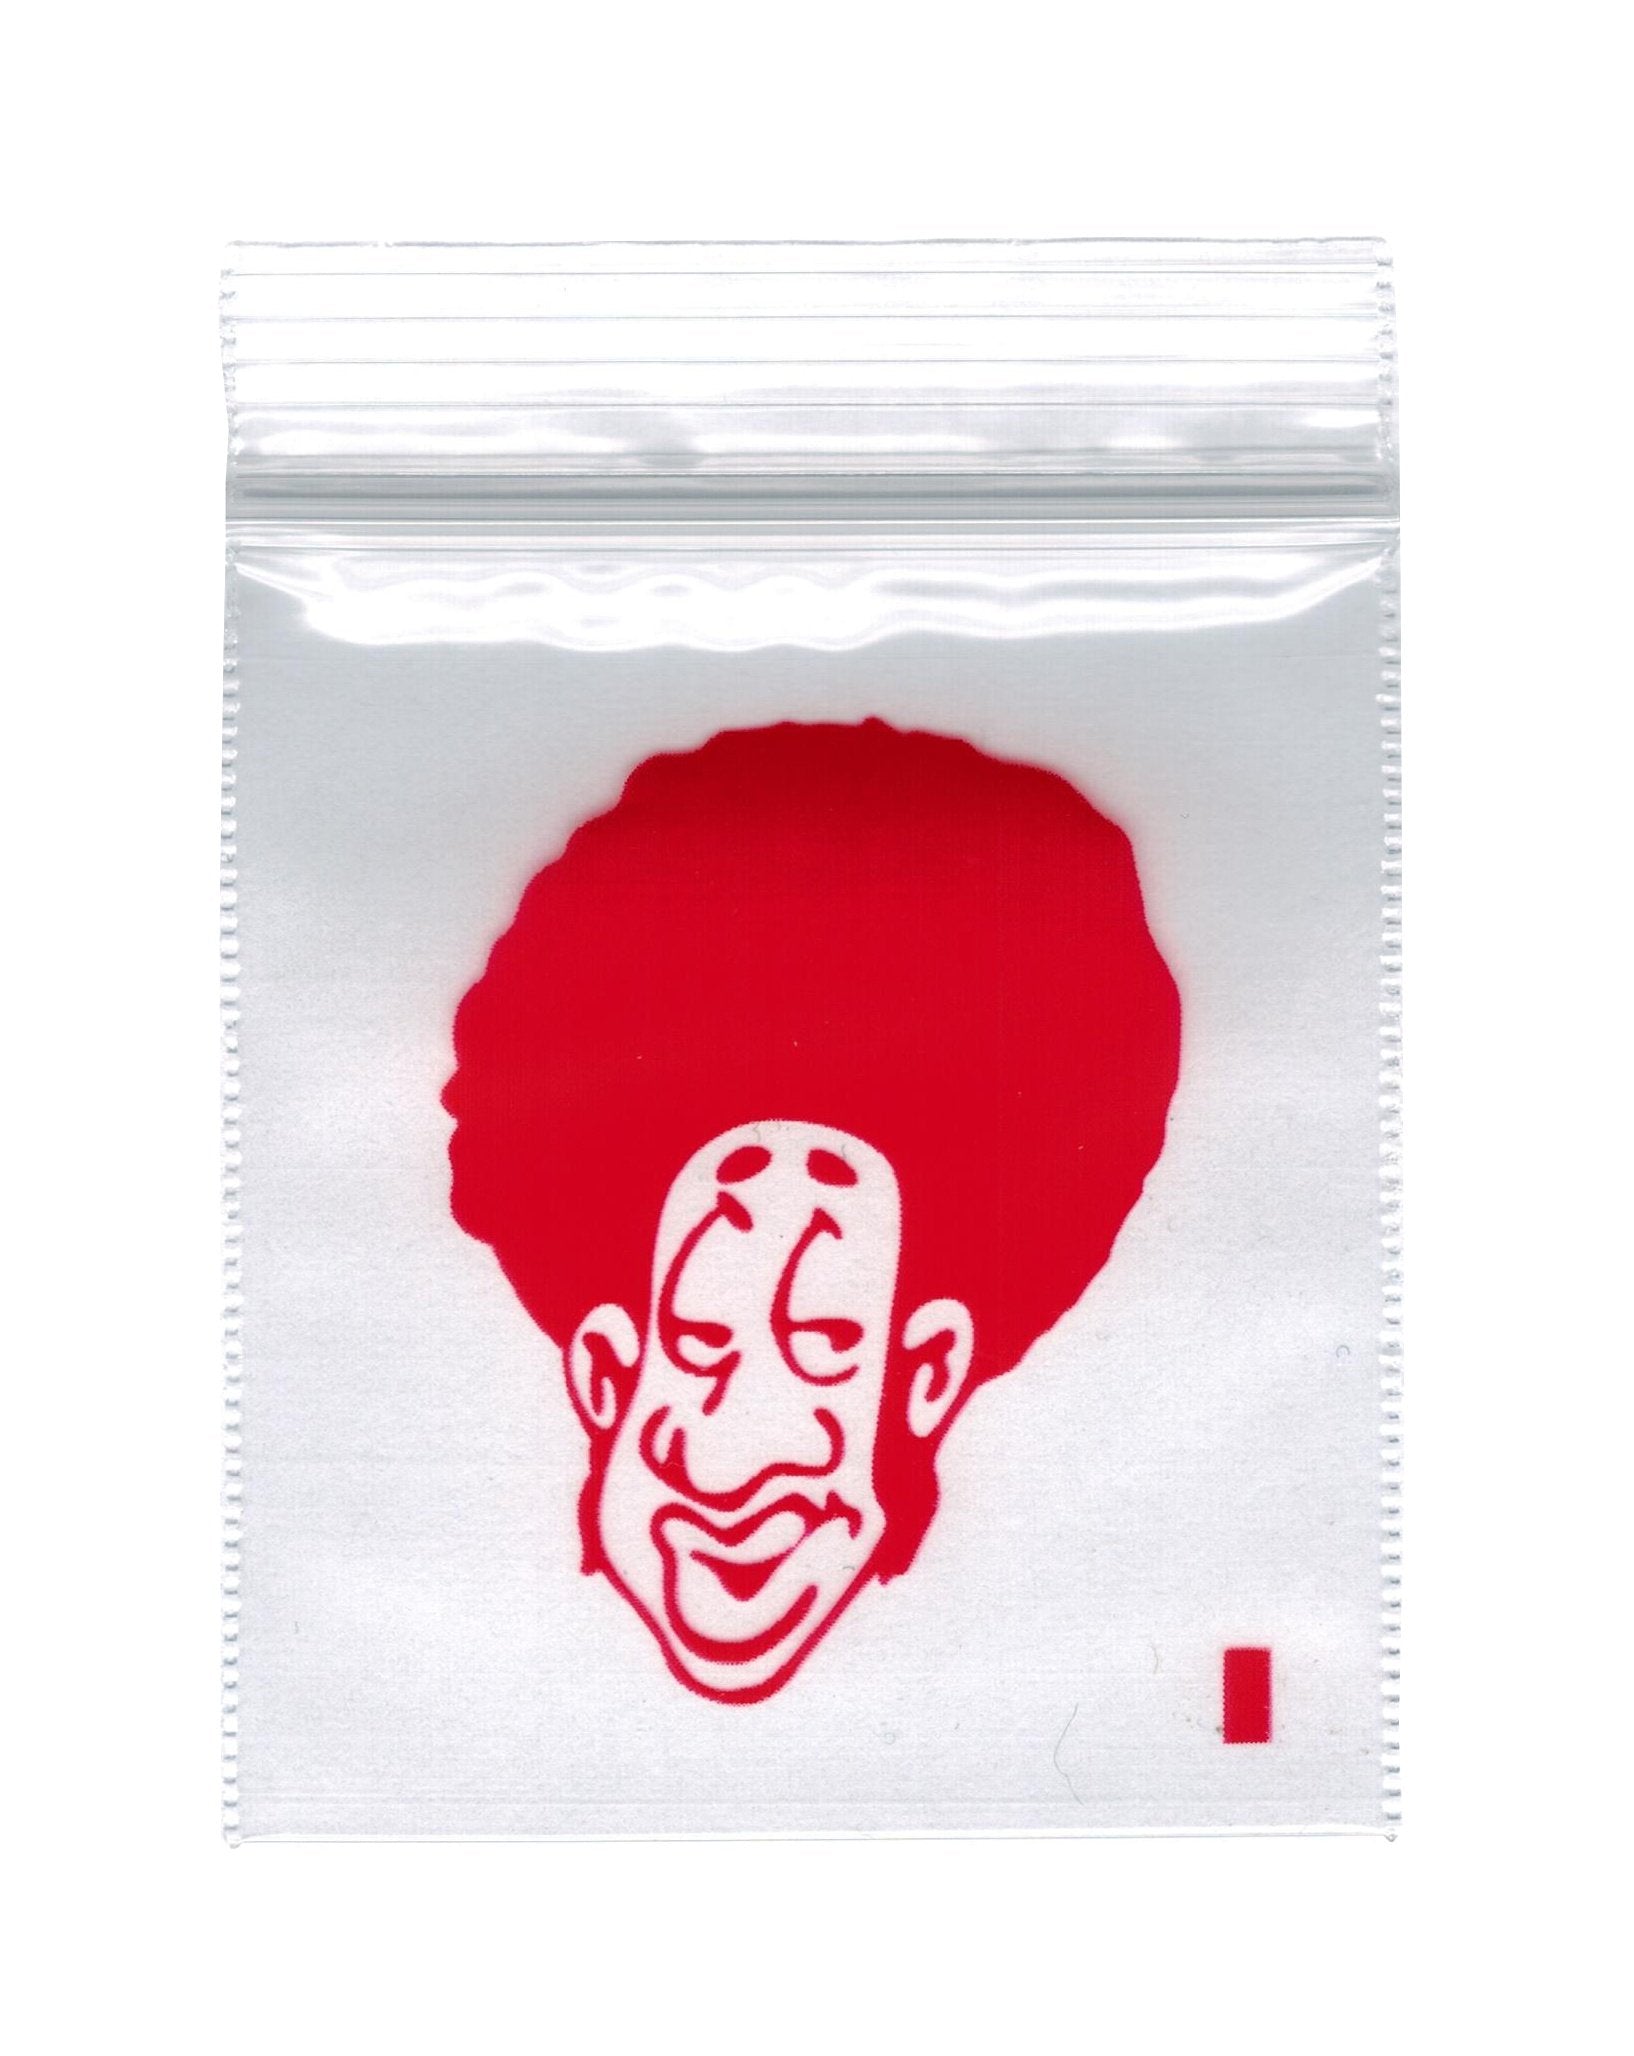 5 x 5.5cm Bag - Afro Man